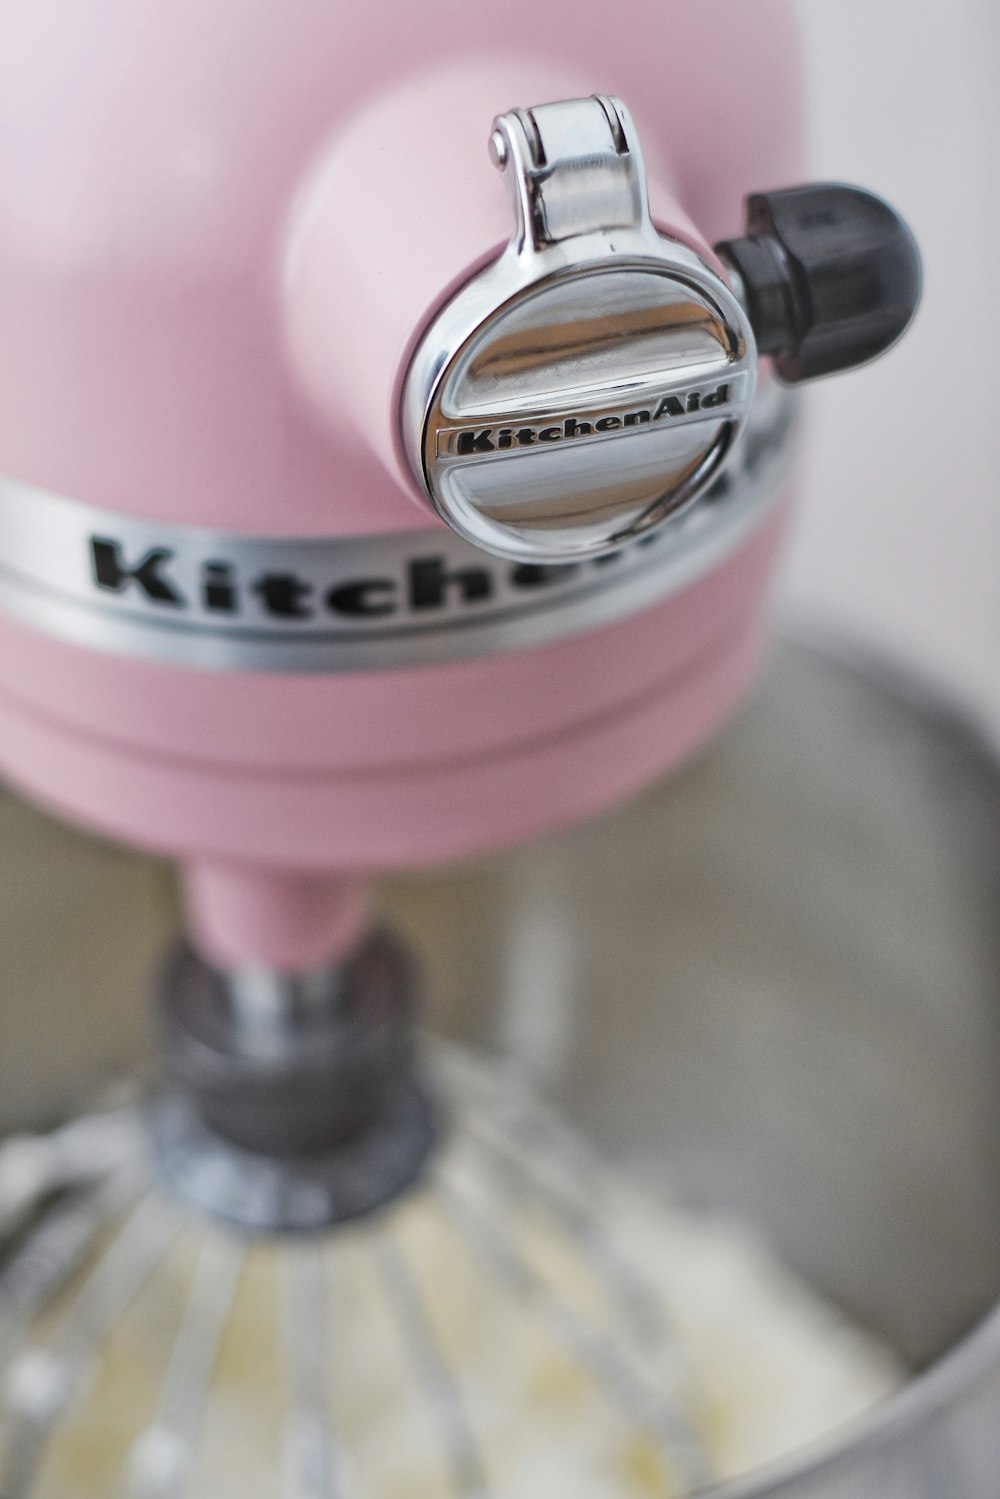 rosa Kitchen Aid Küchenmaschine mit Teig